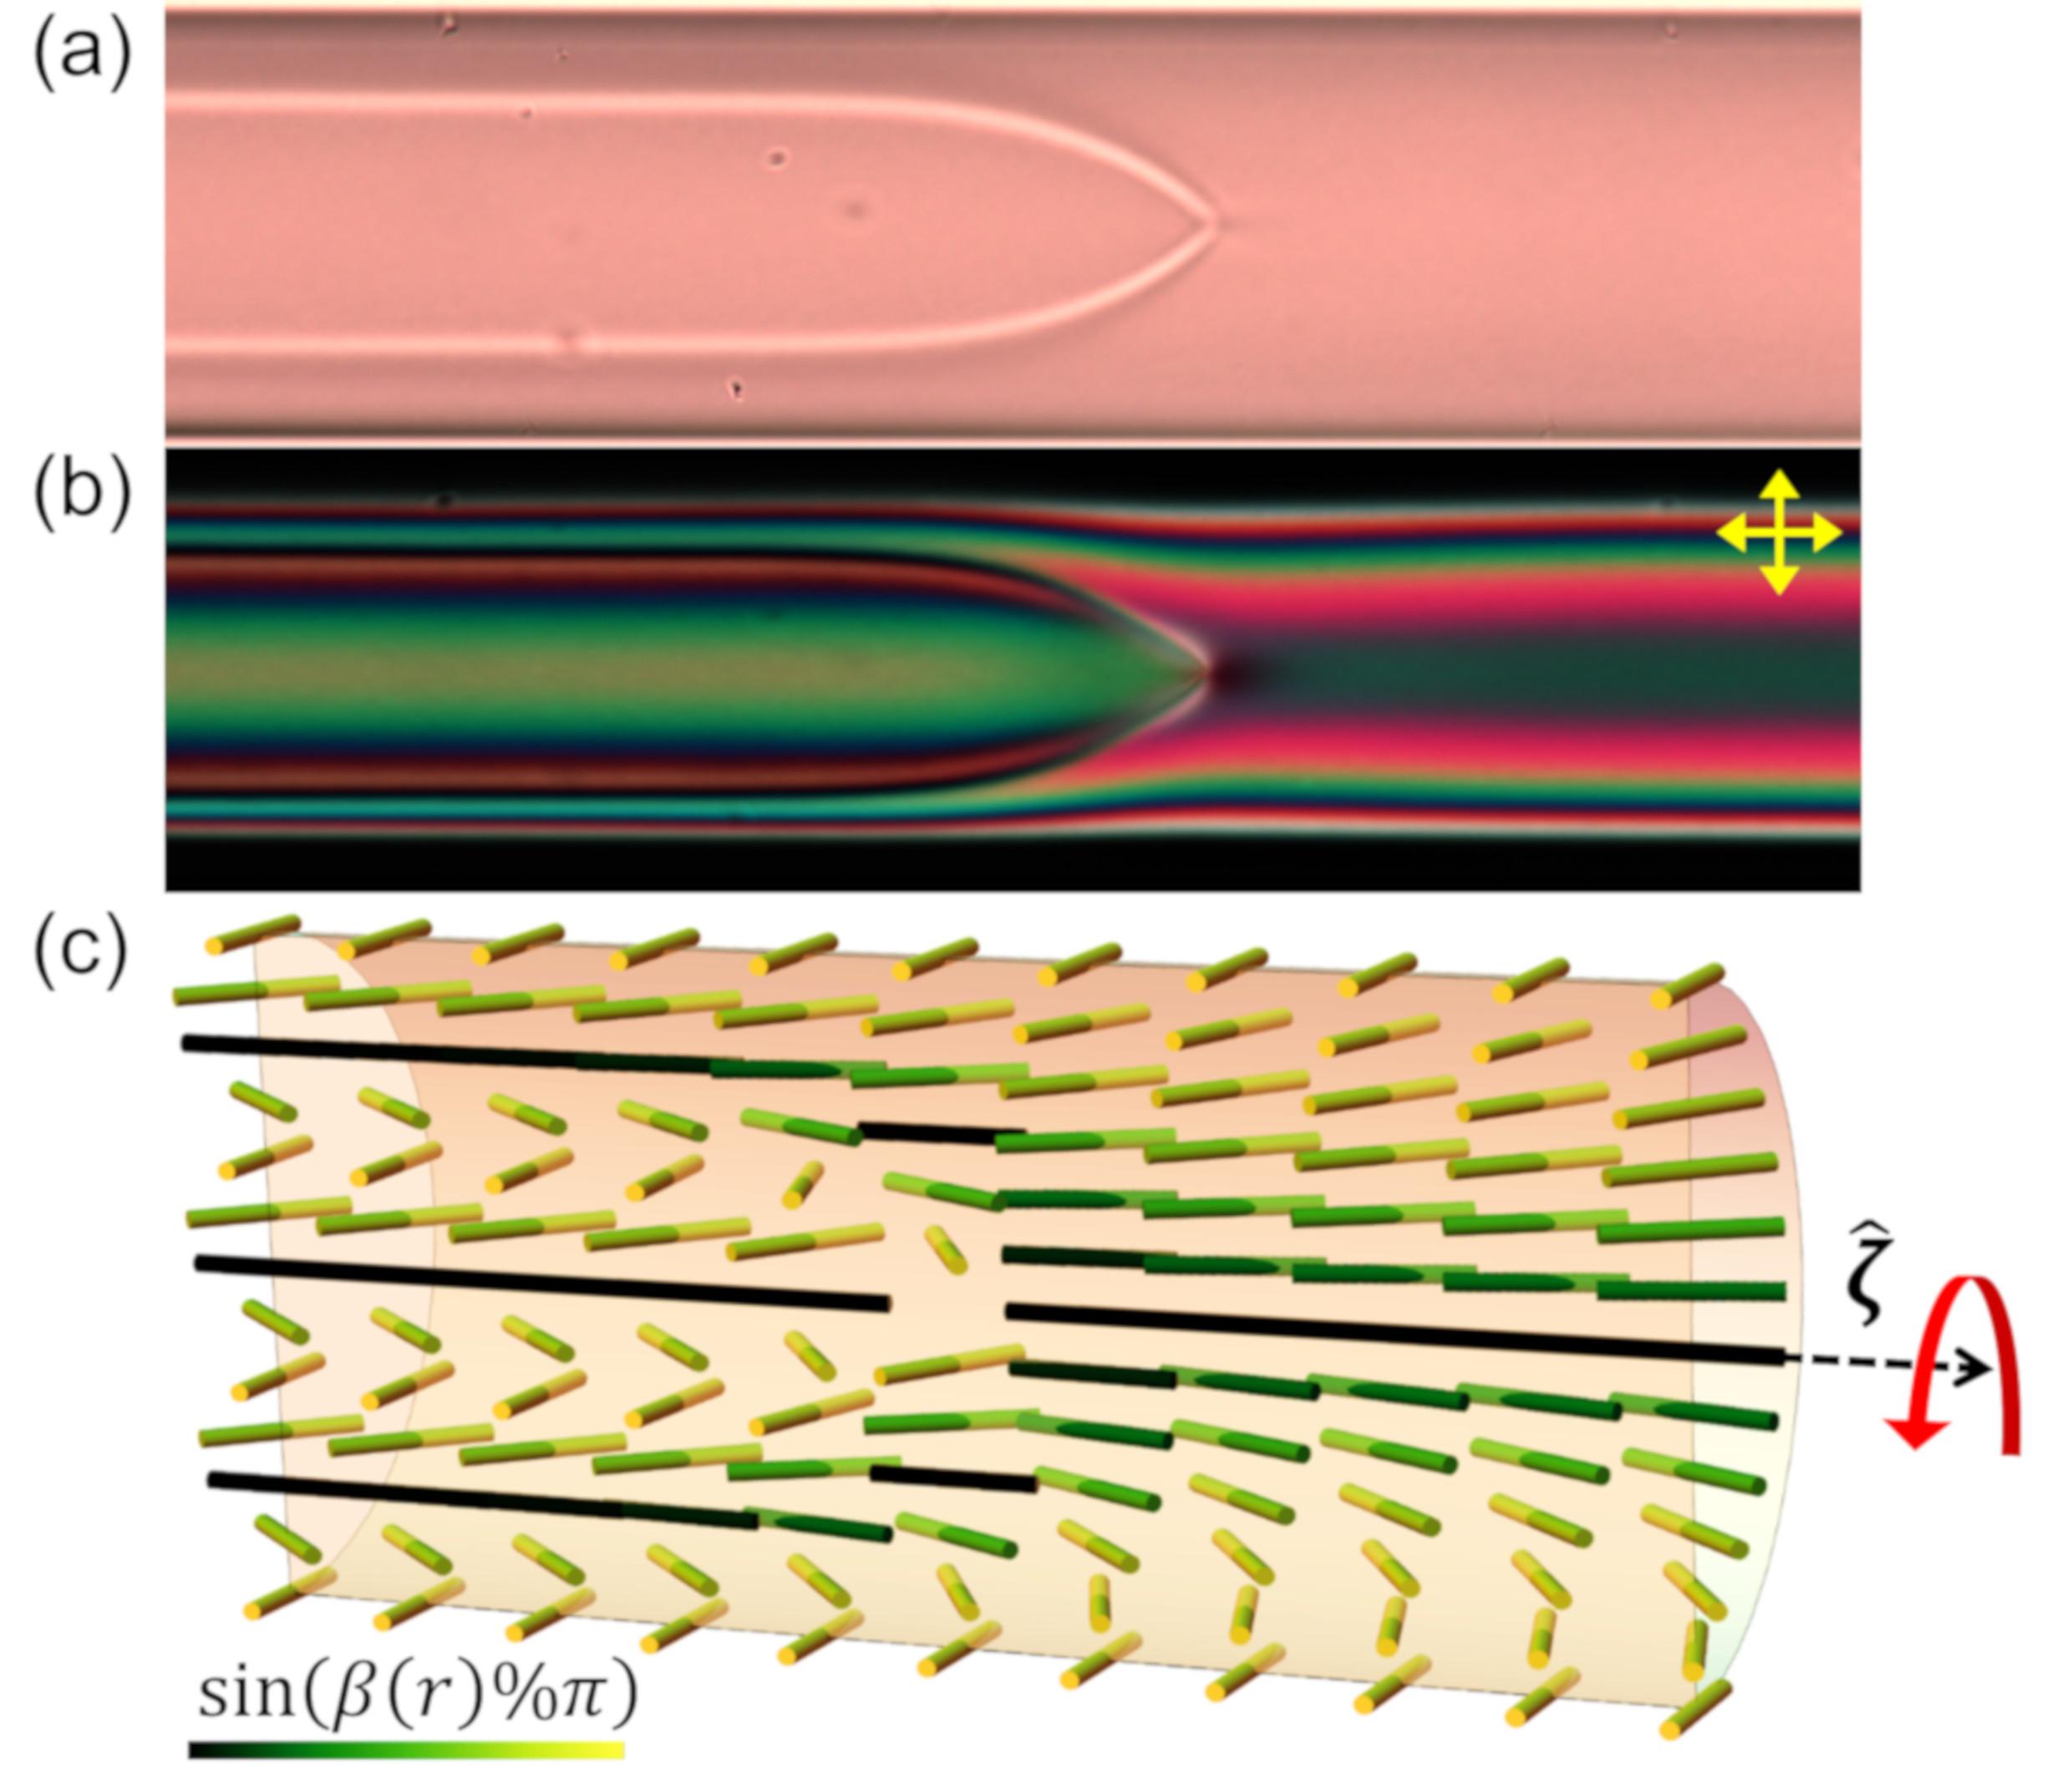 모세관에 갇혀있는 카이랄 크로모닉 액정의 구조를 편광 현미경을 이용하여 관찰함. 밝은색 선이 모인 지점이 위상학적 결함이다. 